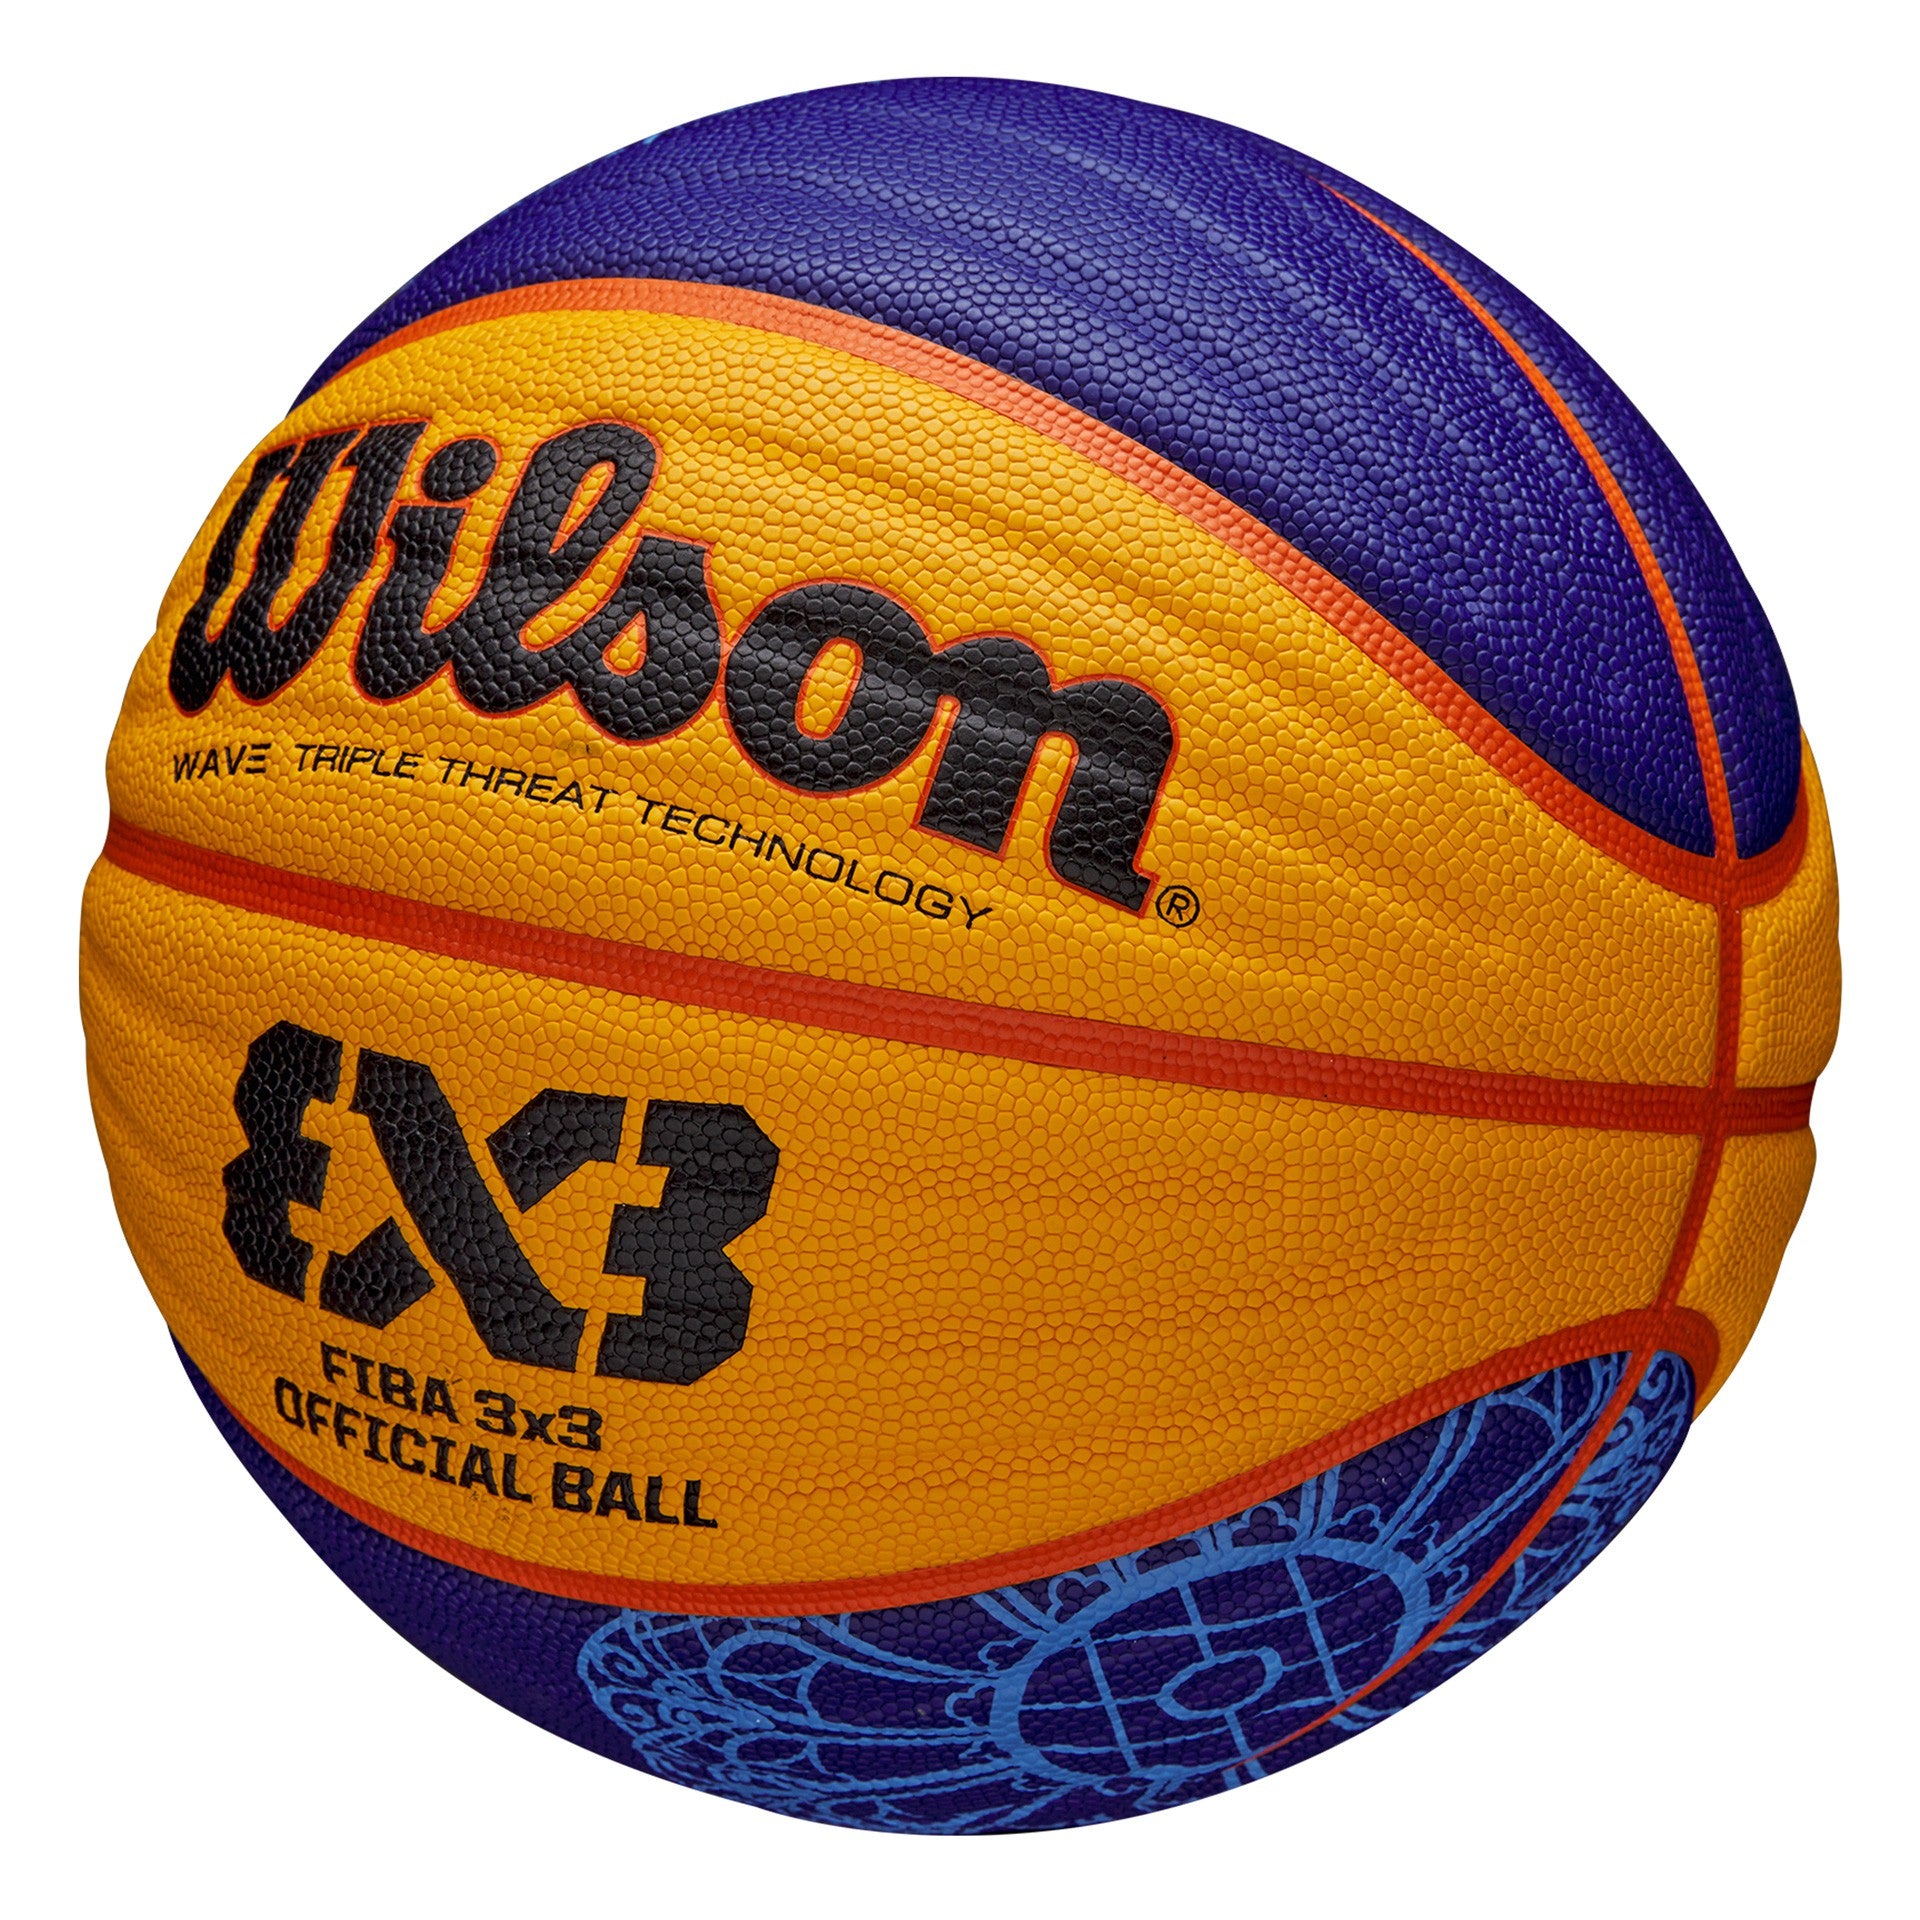 Balón Baloncesto Wilson Fiba 3X3 Oficial Paris 2024